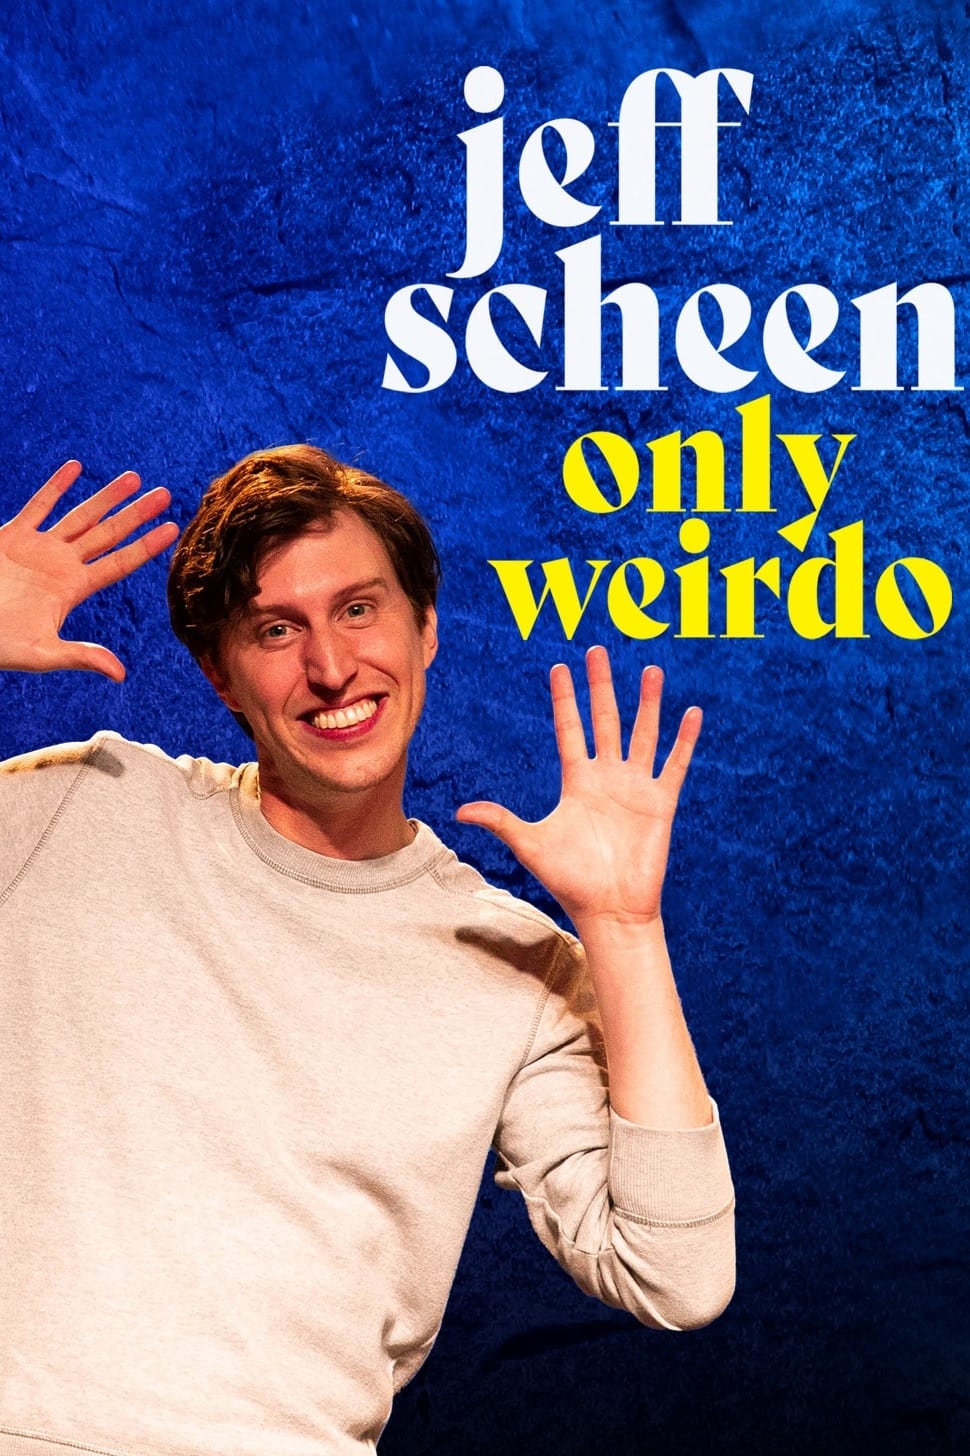 Jeff Scheen: Only Weirdo